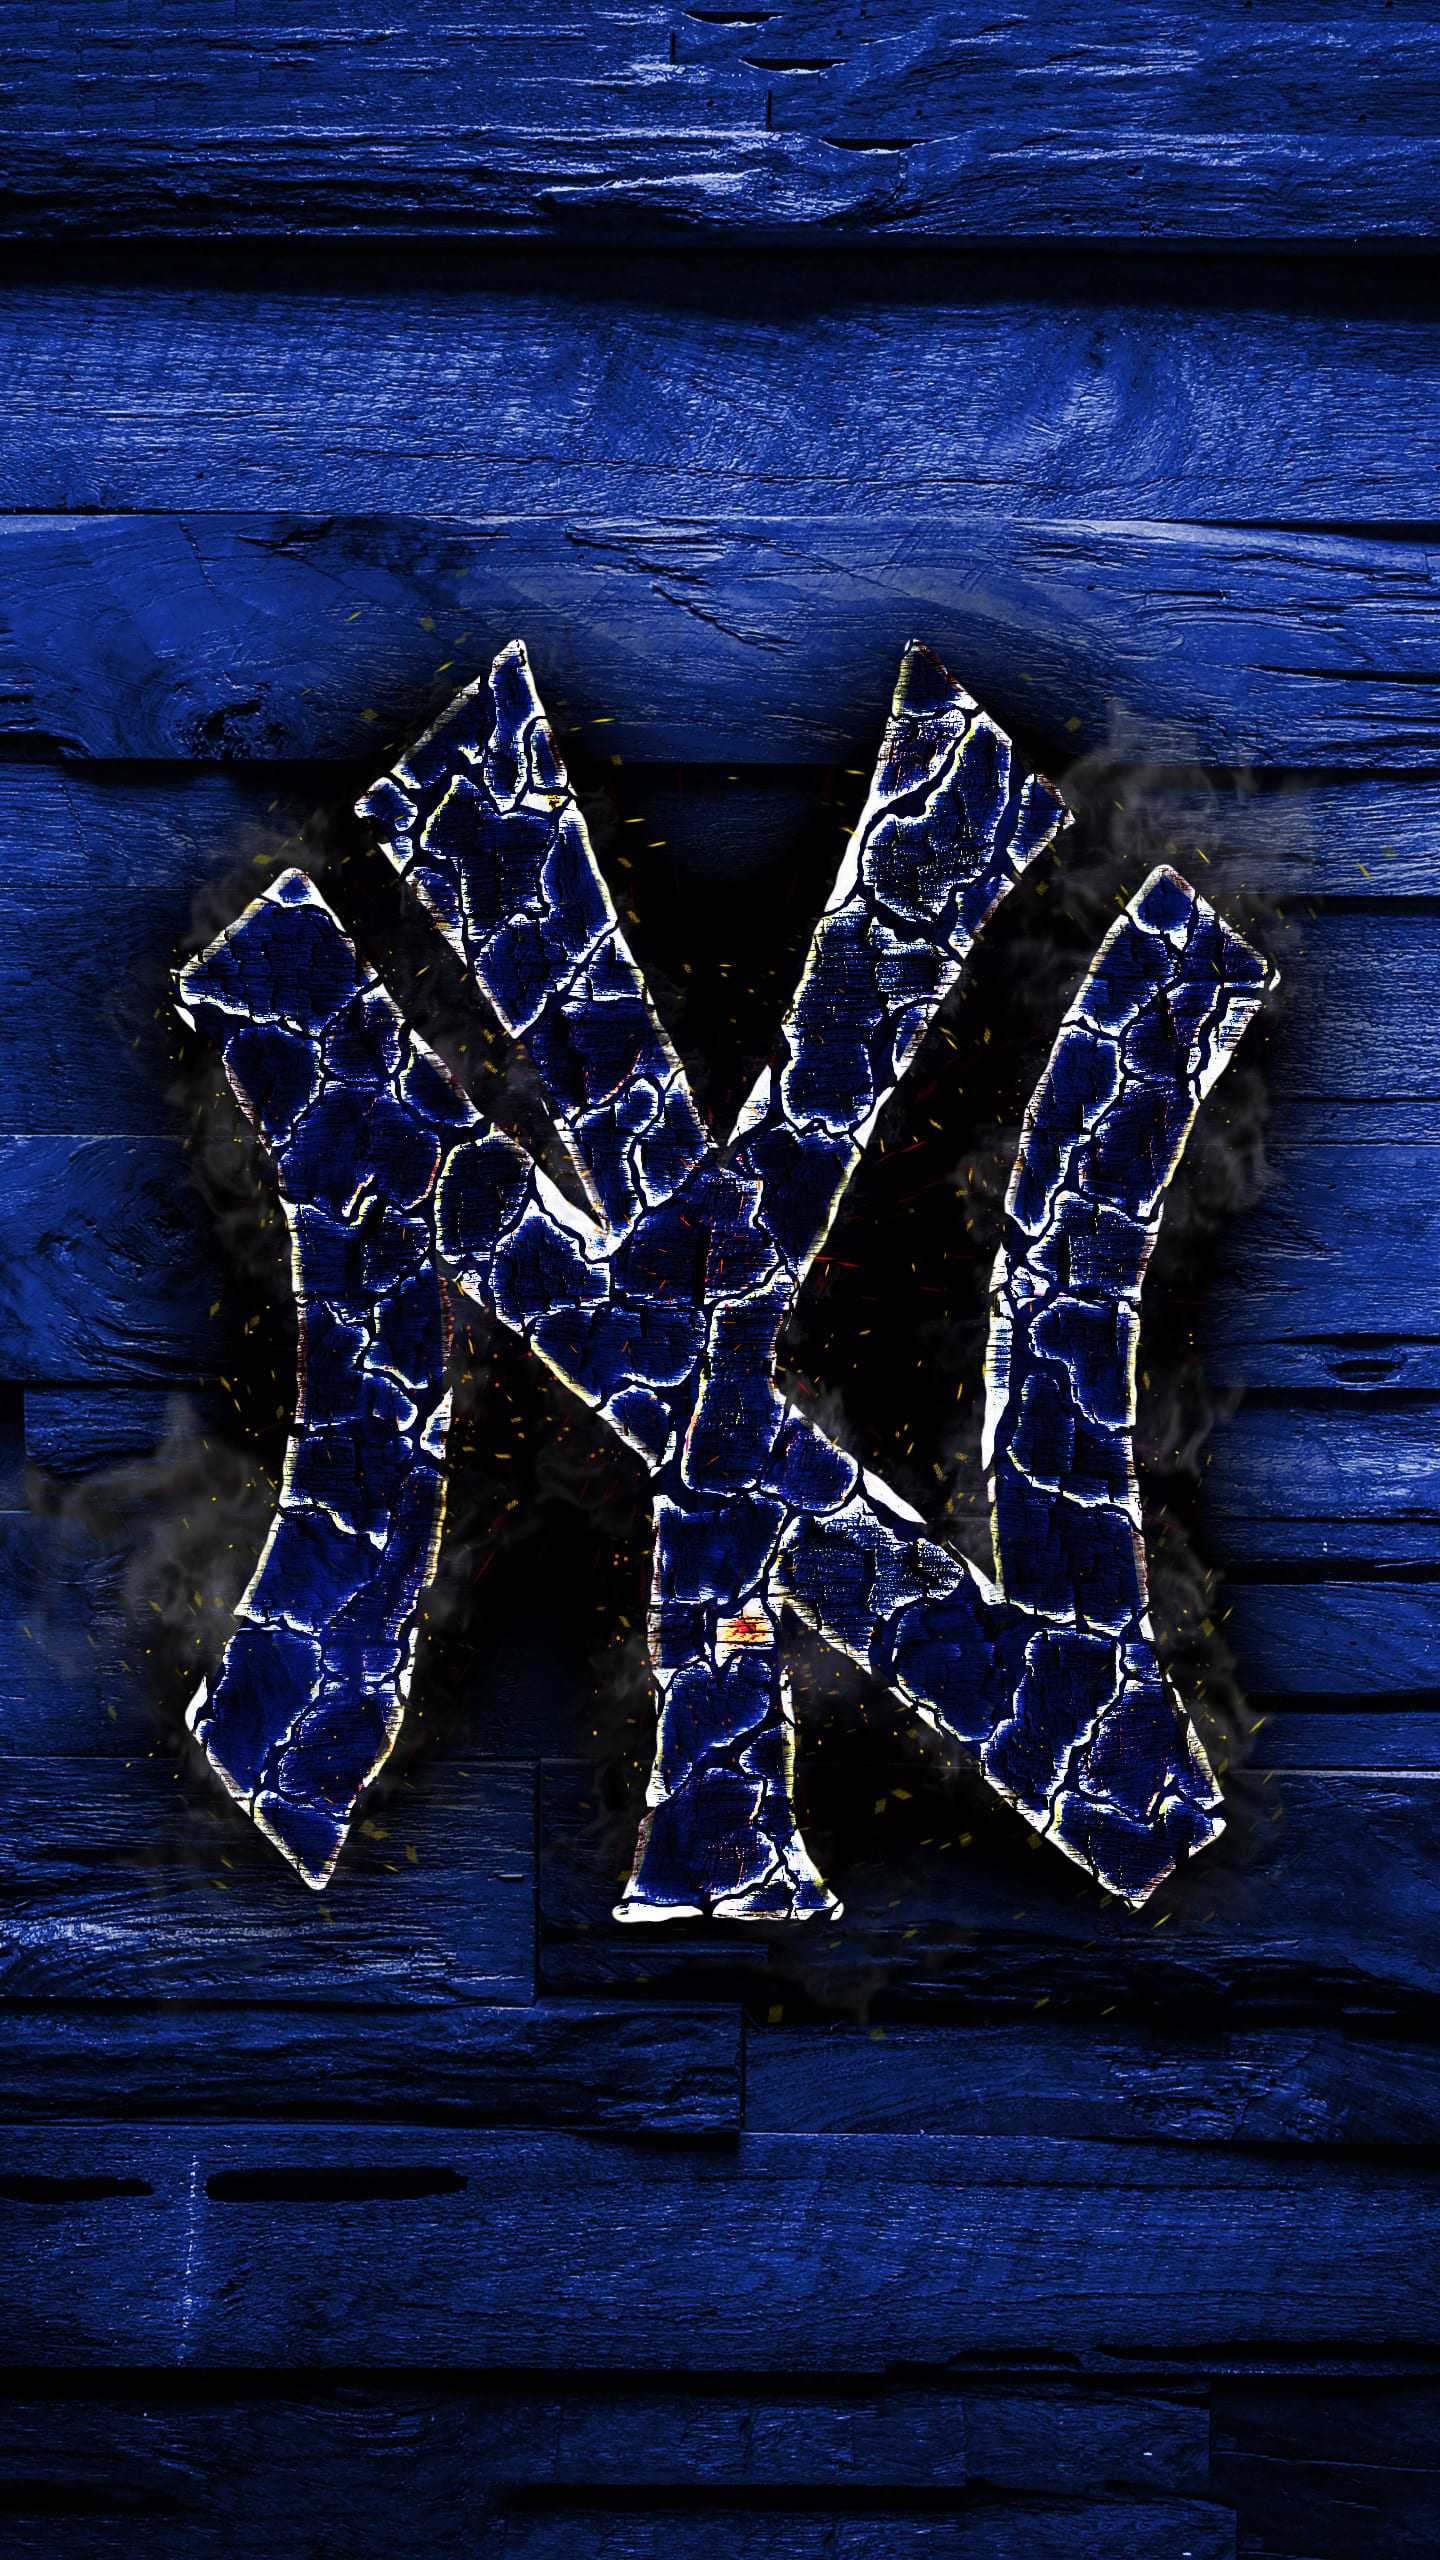 New York Yankees Wallpaper - iXpap